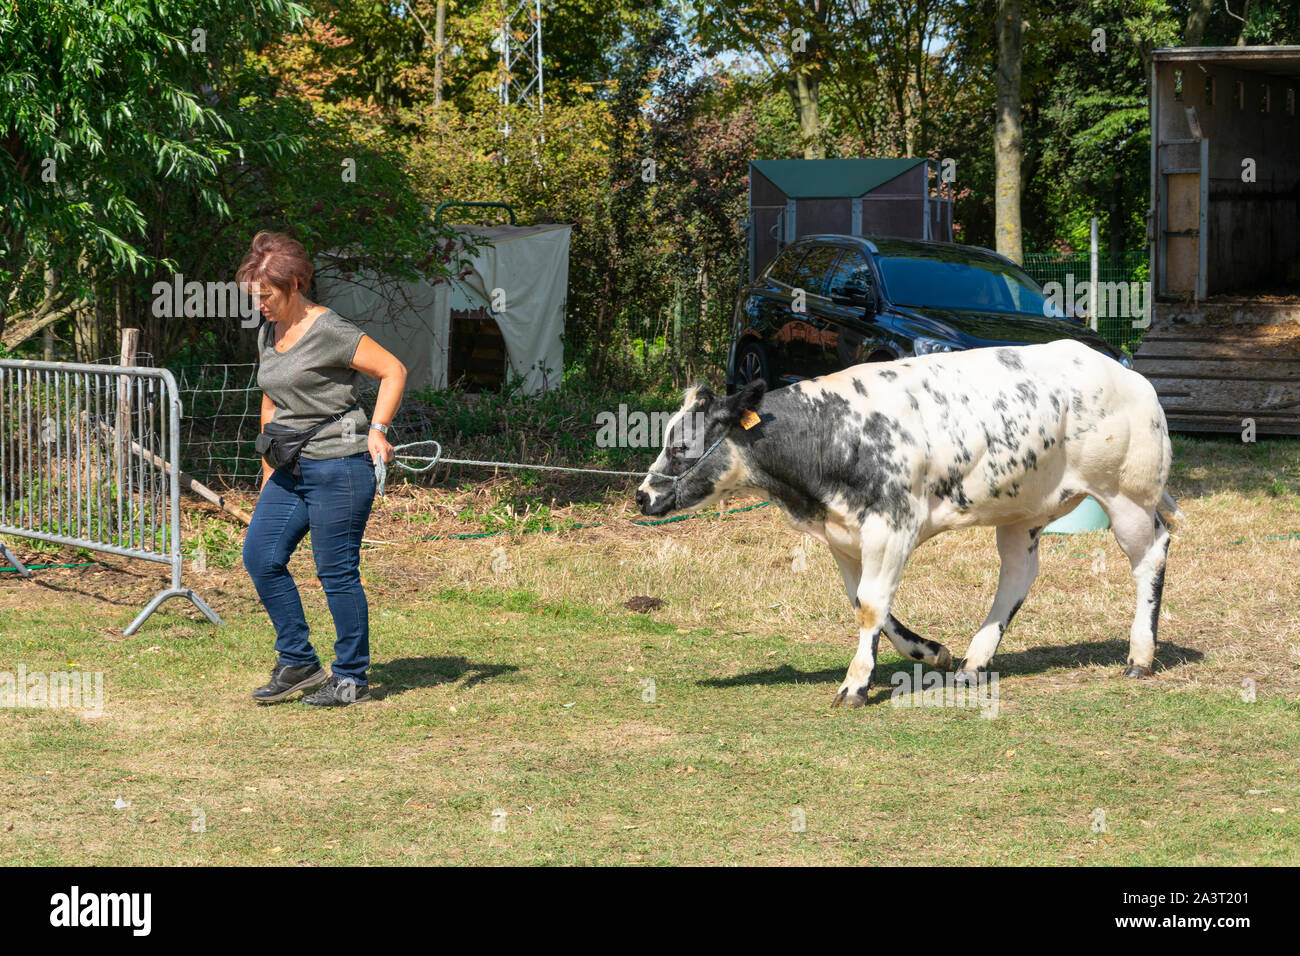 Kieldrecht, Belgio, 1 settembre 2019, che una donna ha una vacca su una lunga corda per essere ammirato dai membri della giuria Foto Stock